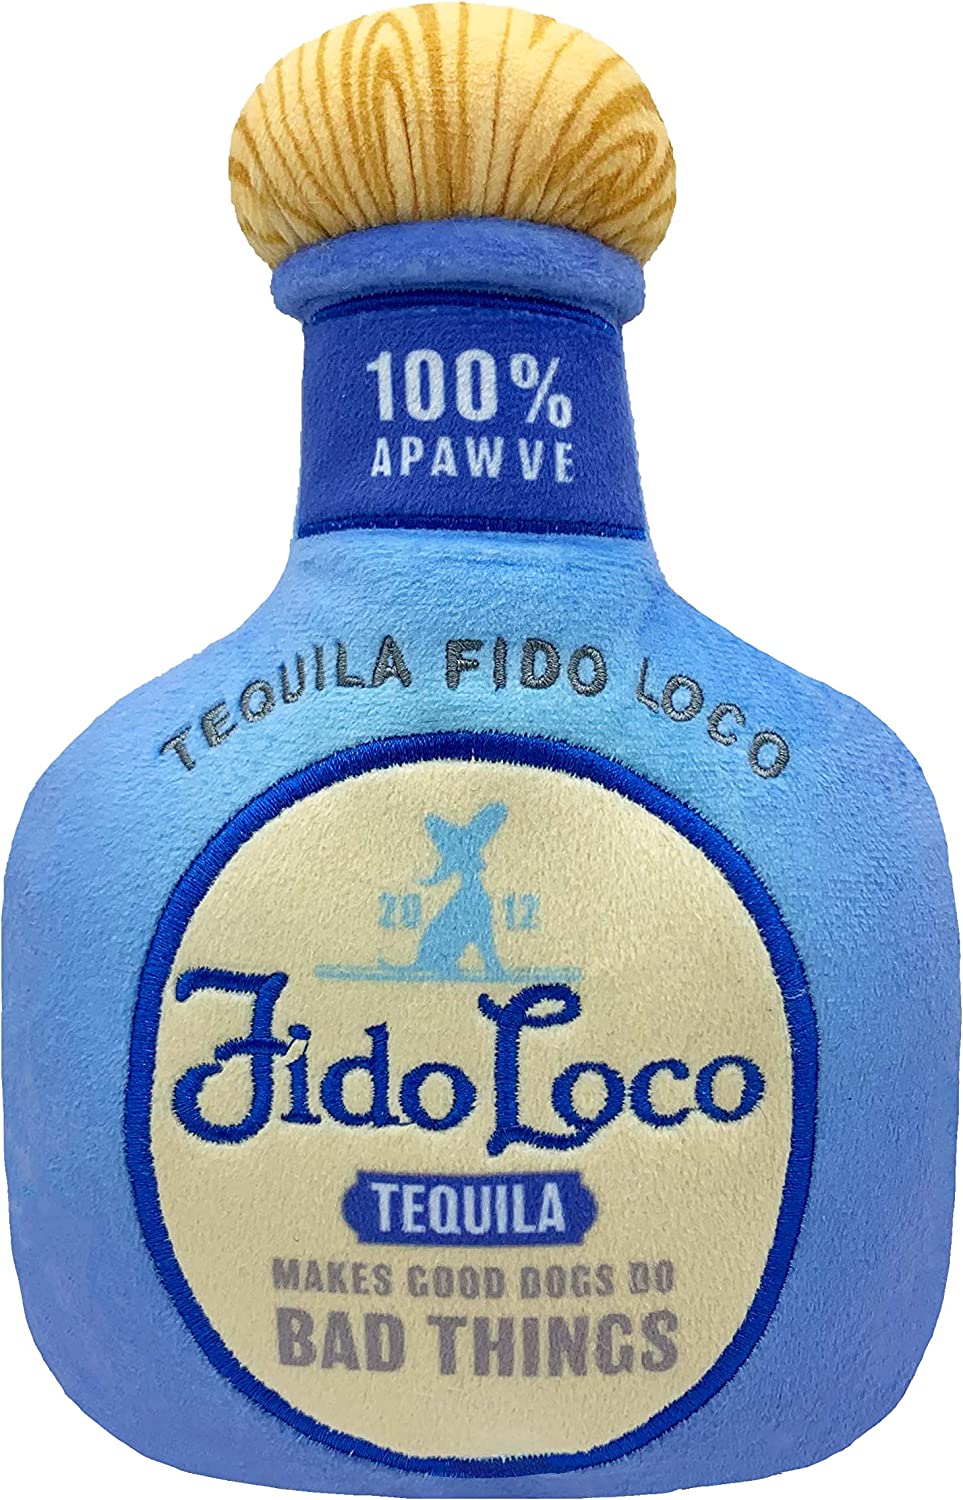 Lulubelles Fido Loco Tequila